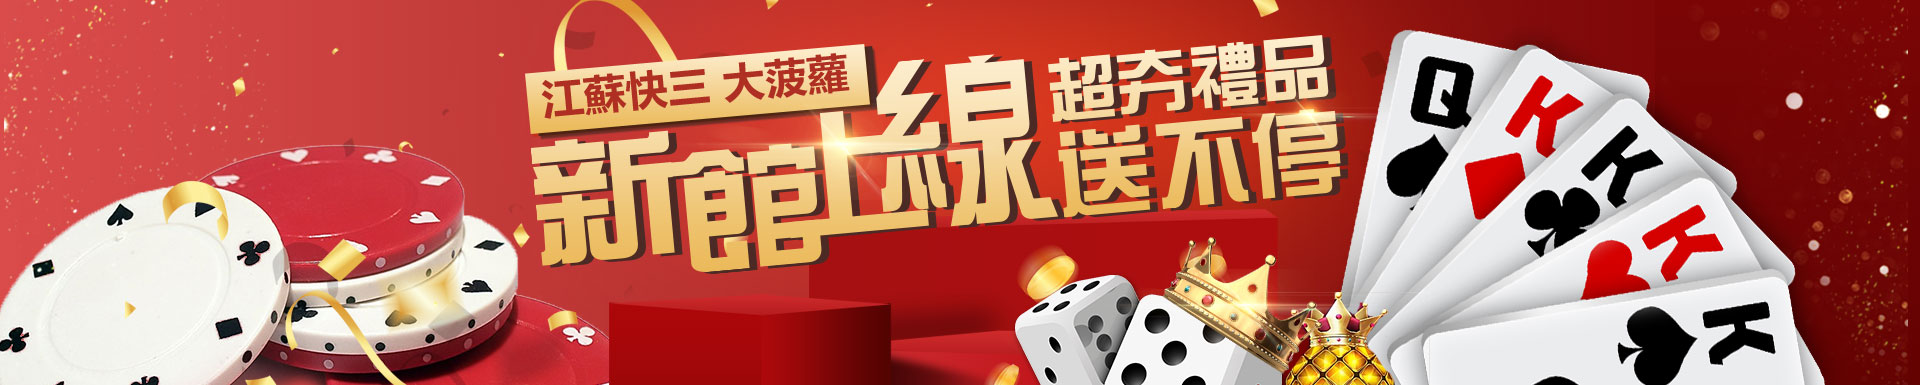 老虎機網上賭場的哪些技巧在台灣真正有效